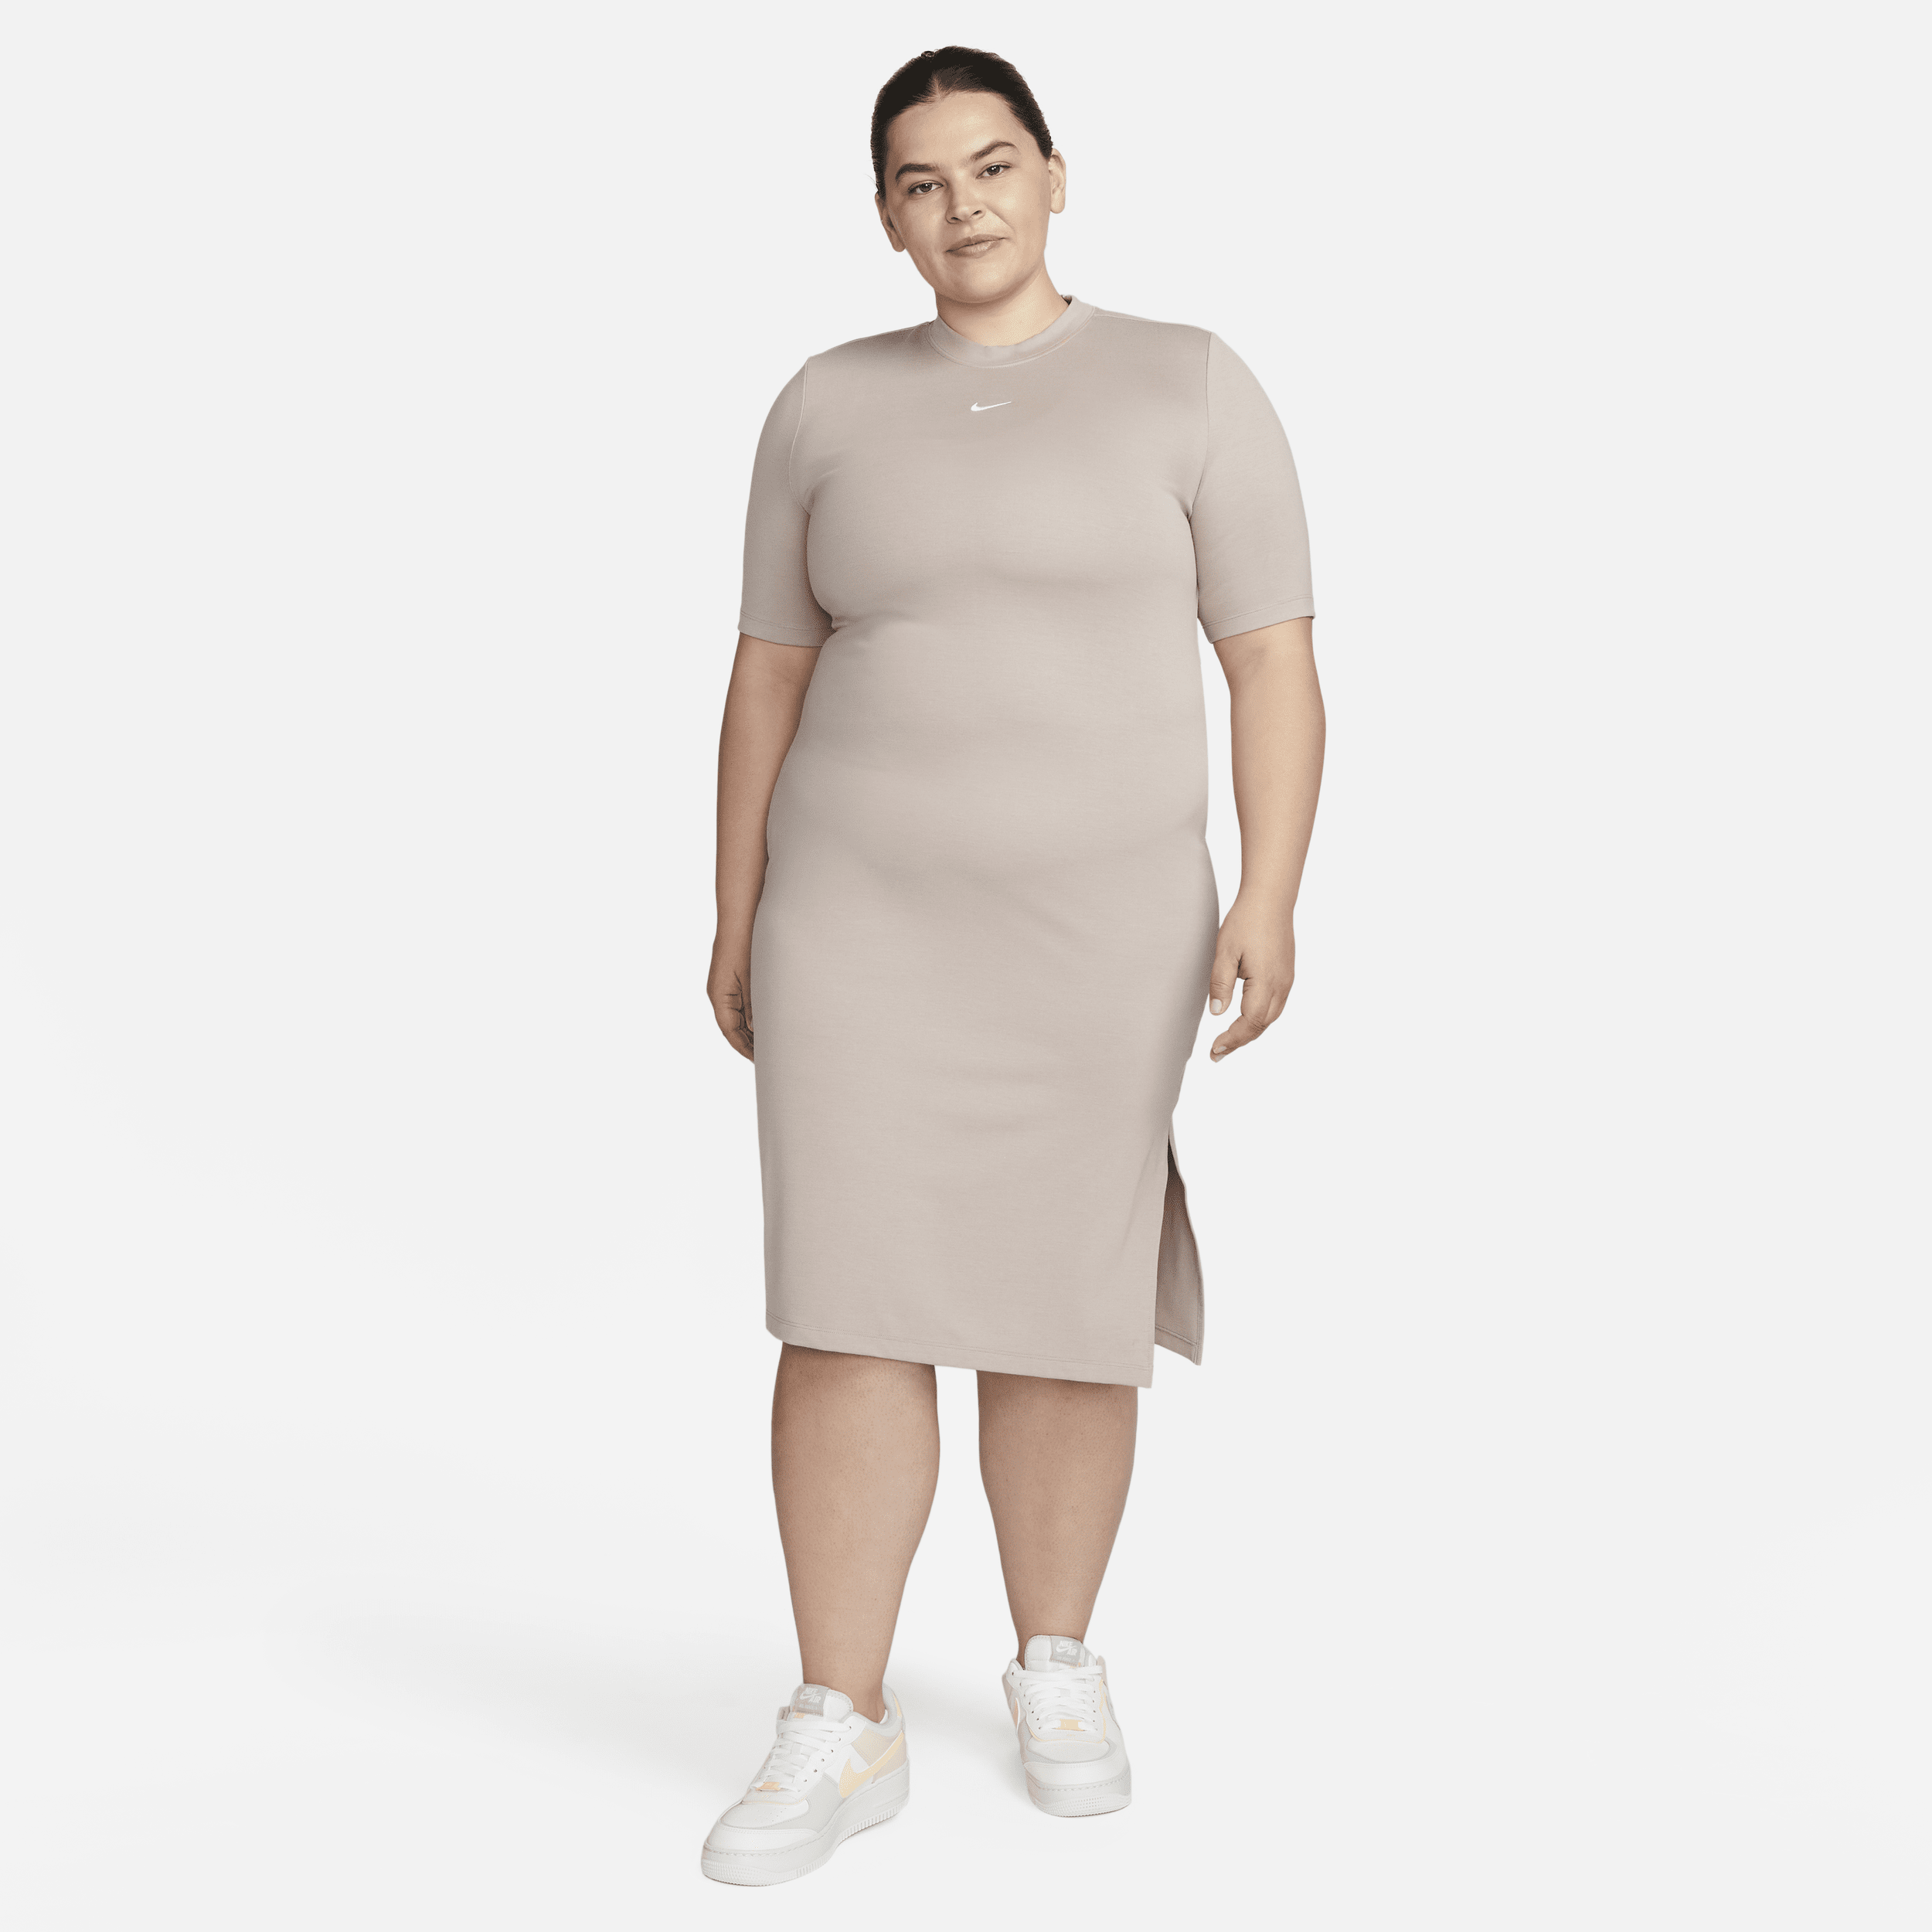 Nike Sportswear Essential Women's Tight Midi Dress.